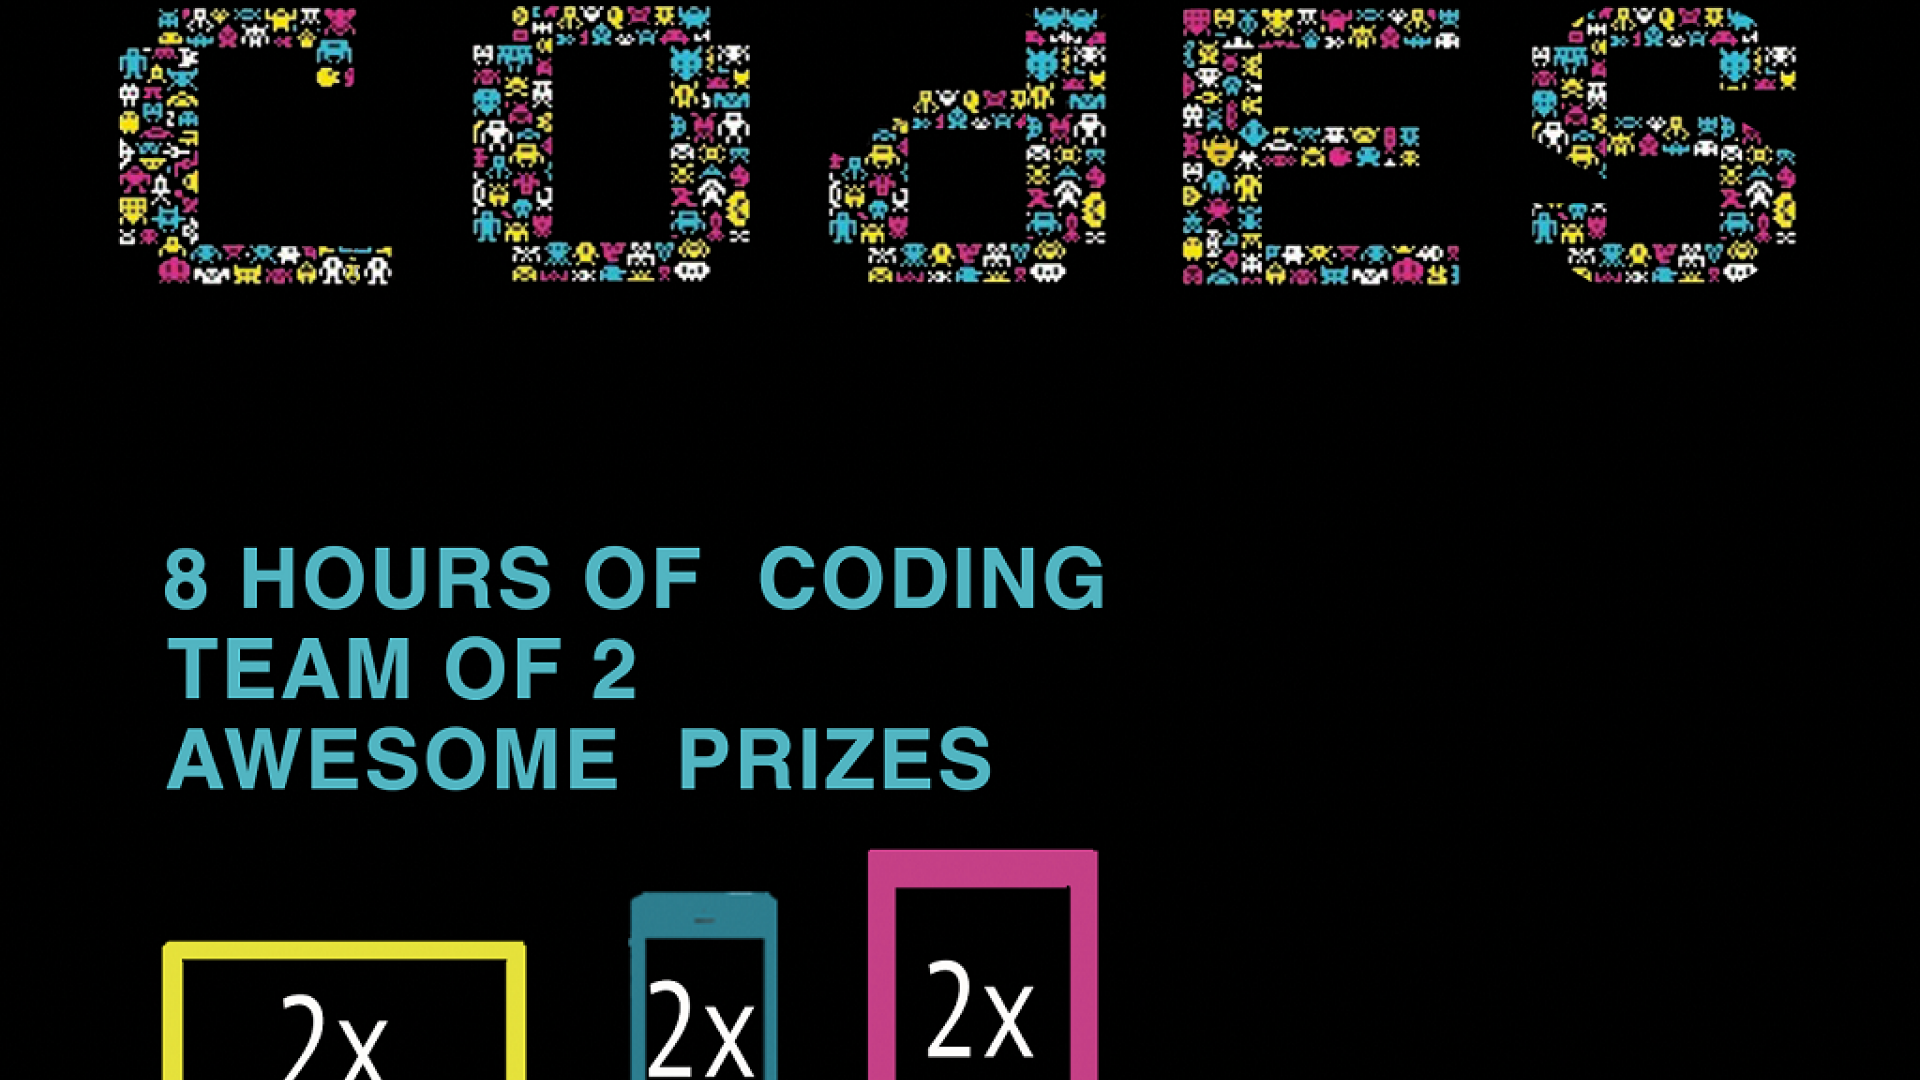 Peste 140 de elevi la a treia editie Game of Codes